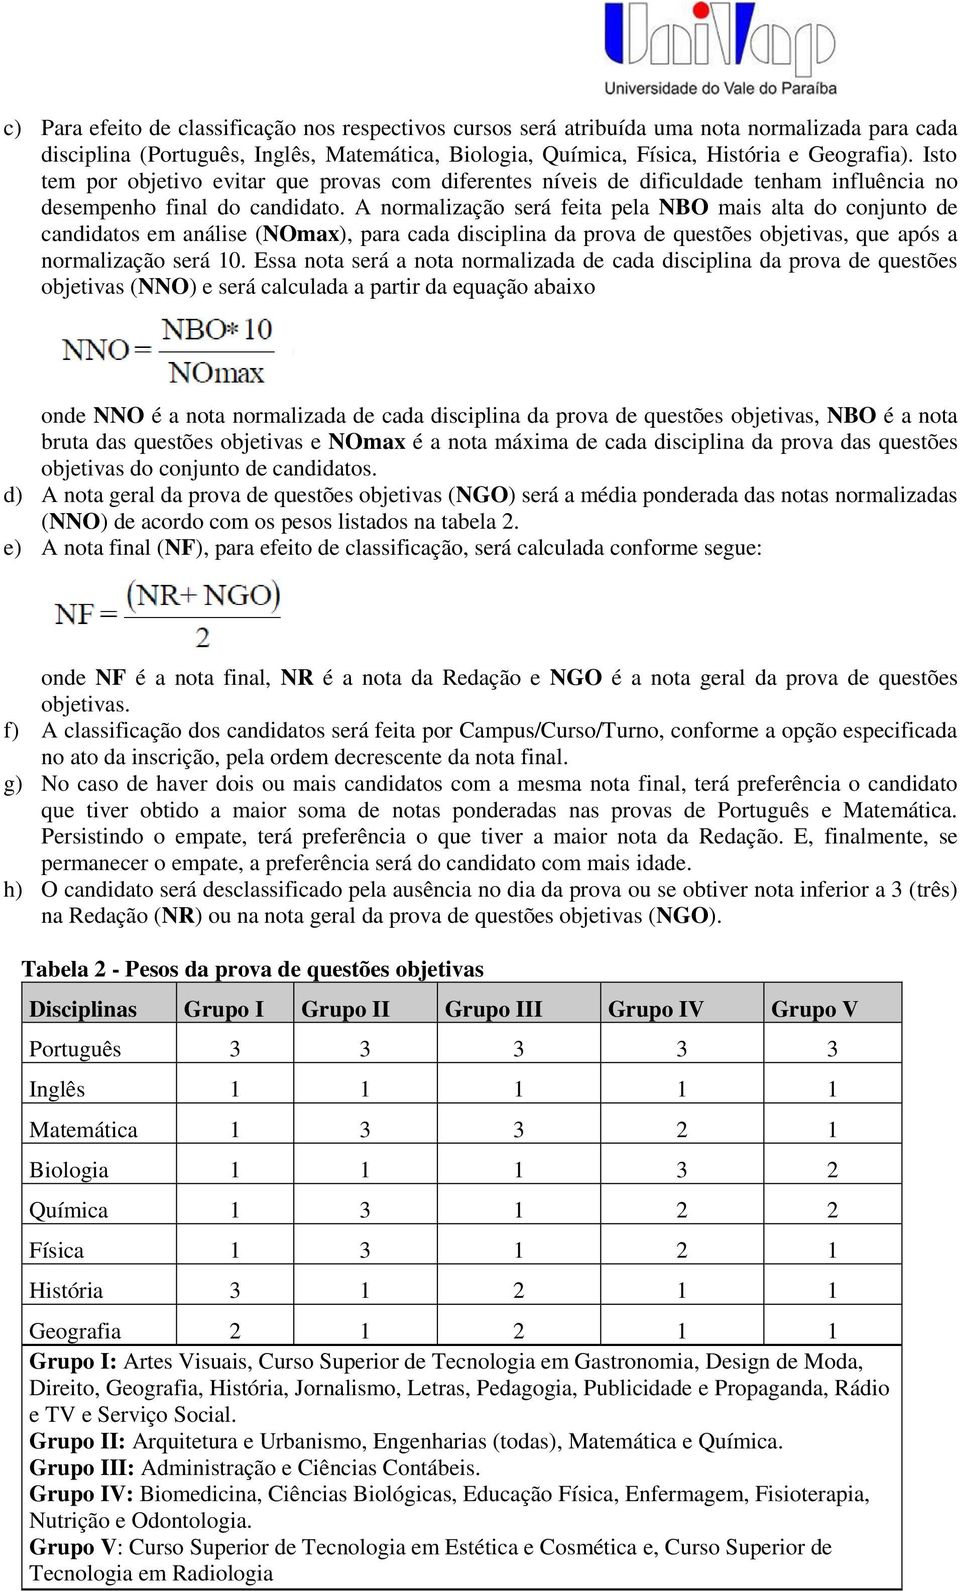 A normalização será feita pela NBO mais alta do conjunto de candidatos em análise (NOmax), para cada disciplina da prova de questões objetivas, que após a normalização será 10.